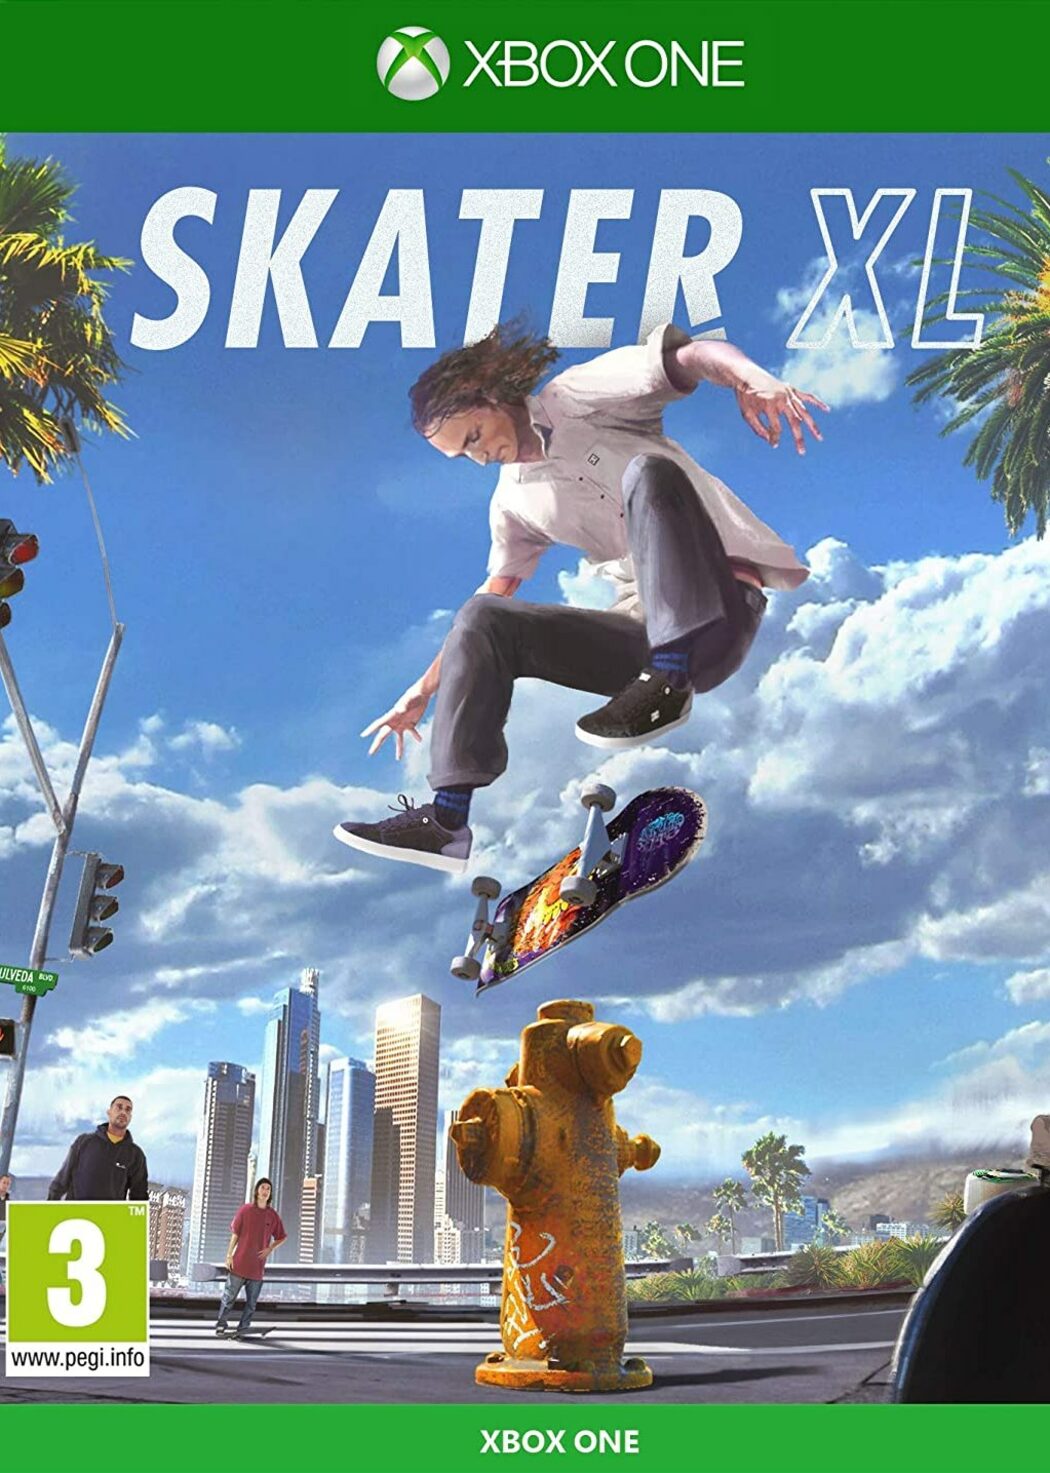 skateboard games xbox one